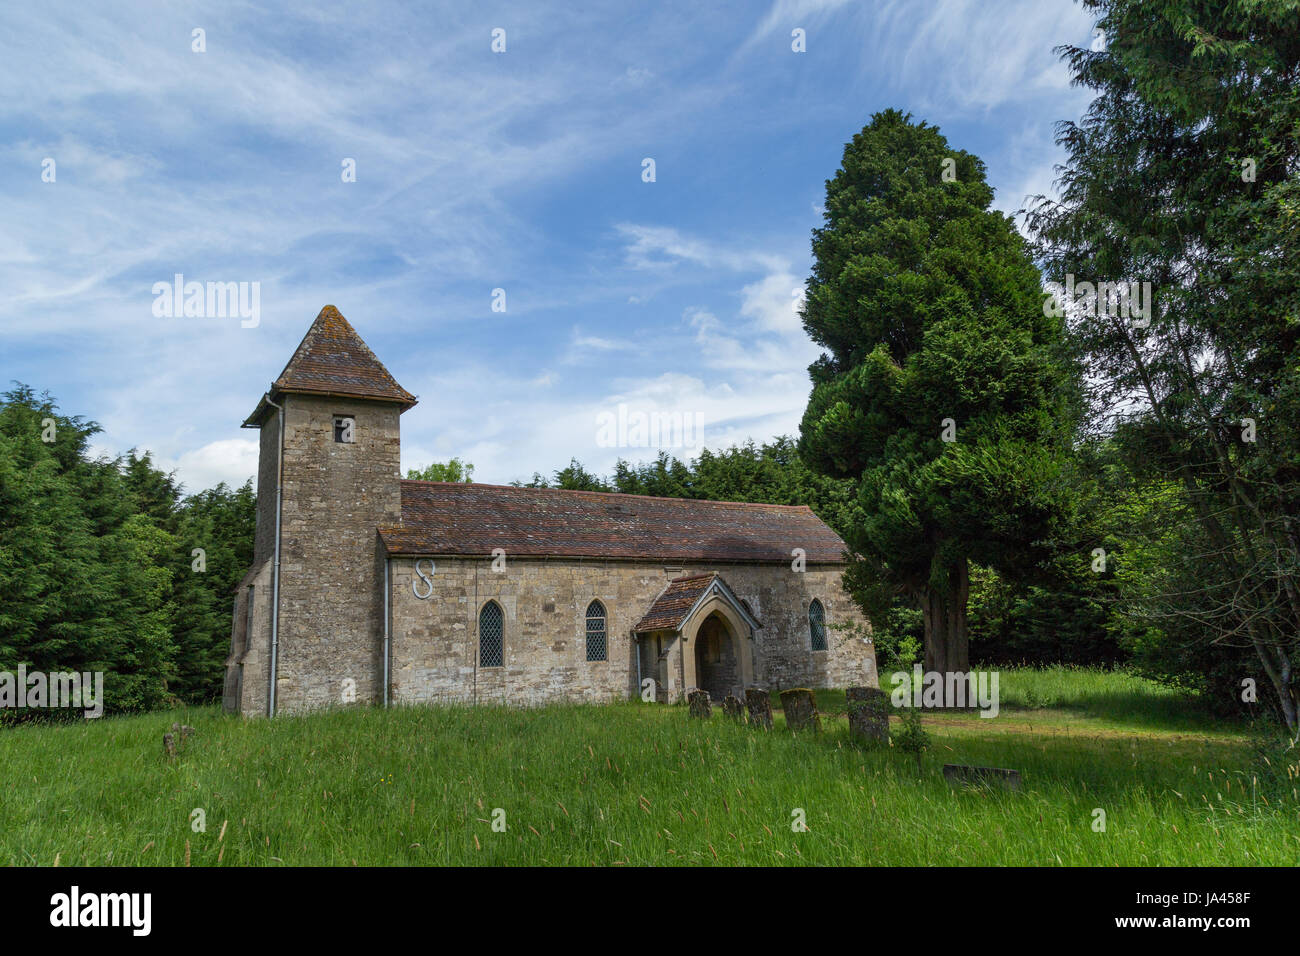 Pfarrkirche Heilige Dreifaltigkeit in Godington in Oxfordshire. Die Kirche ist umgeben von Bäumen auf einer grünen Weide mit blauem Himmel und Wolkenfetzen. Stockfoto